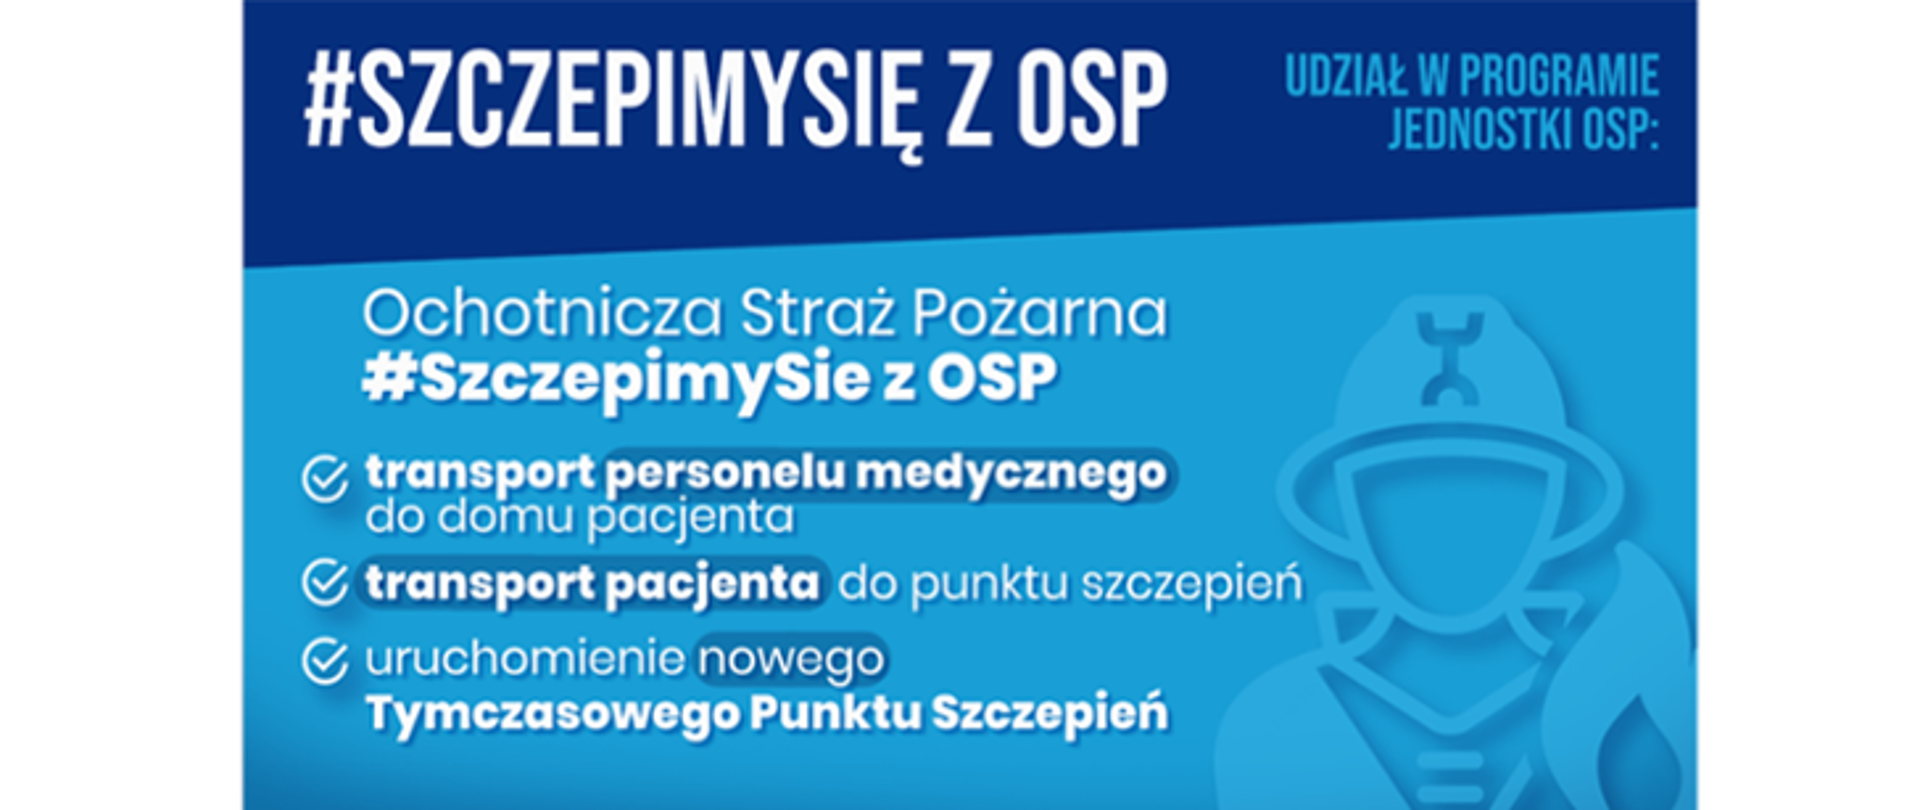 Zdjęcie przedstawia plakat na niebieskim tle z akcji #Szczepimy się z OSP.